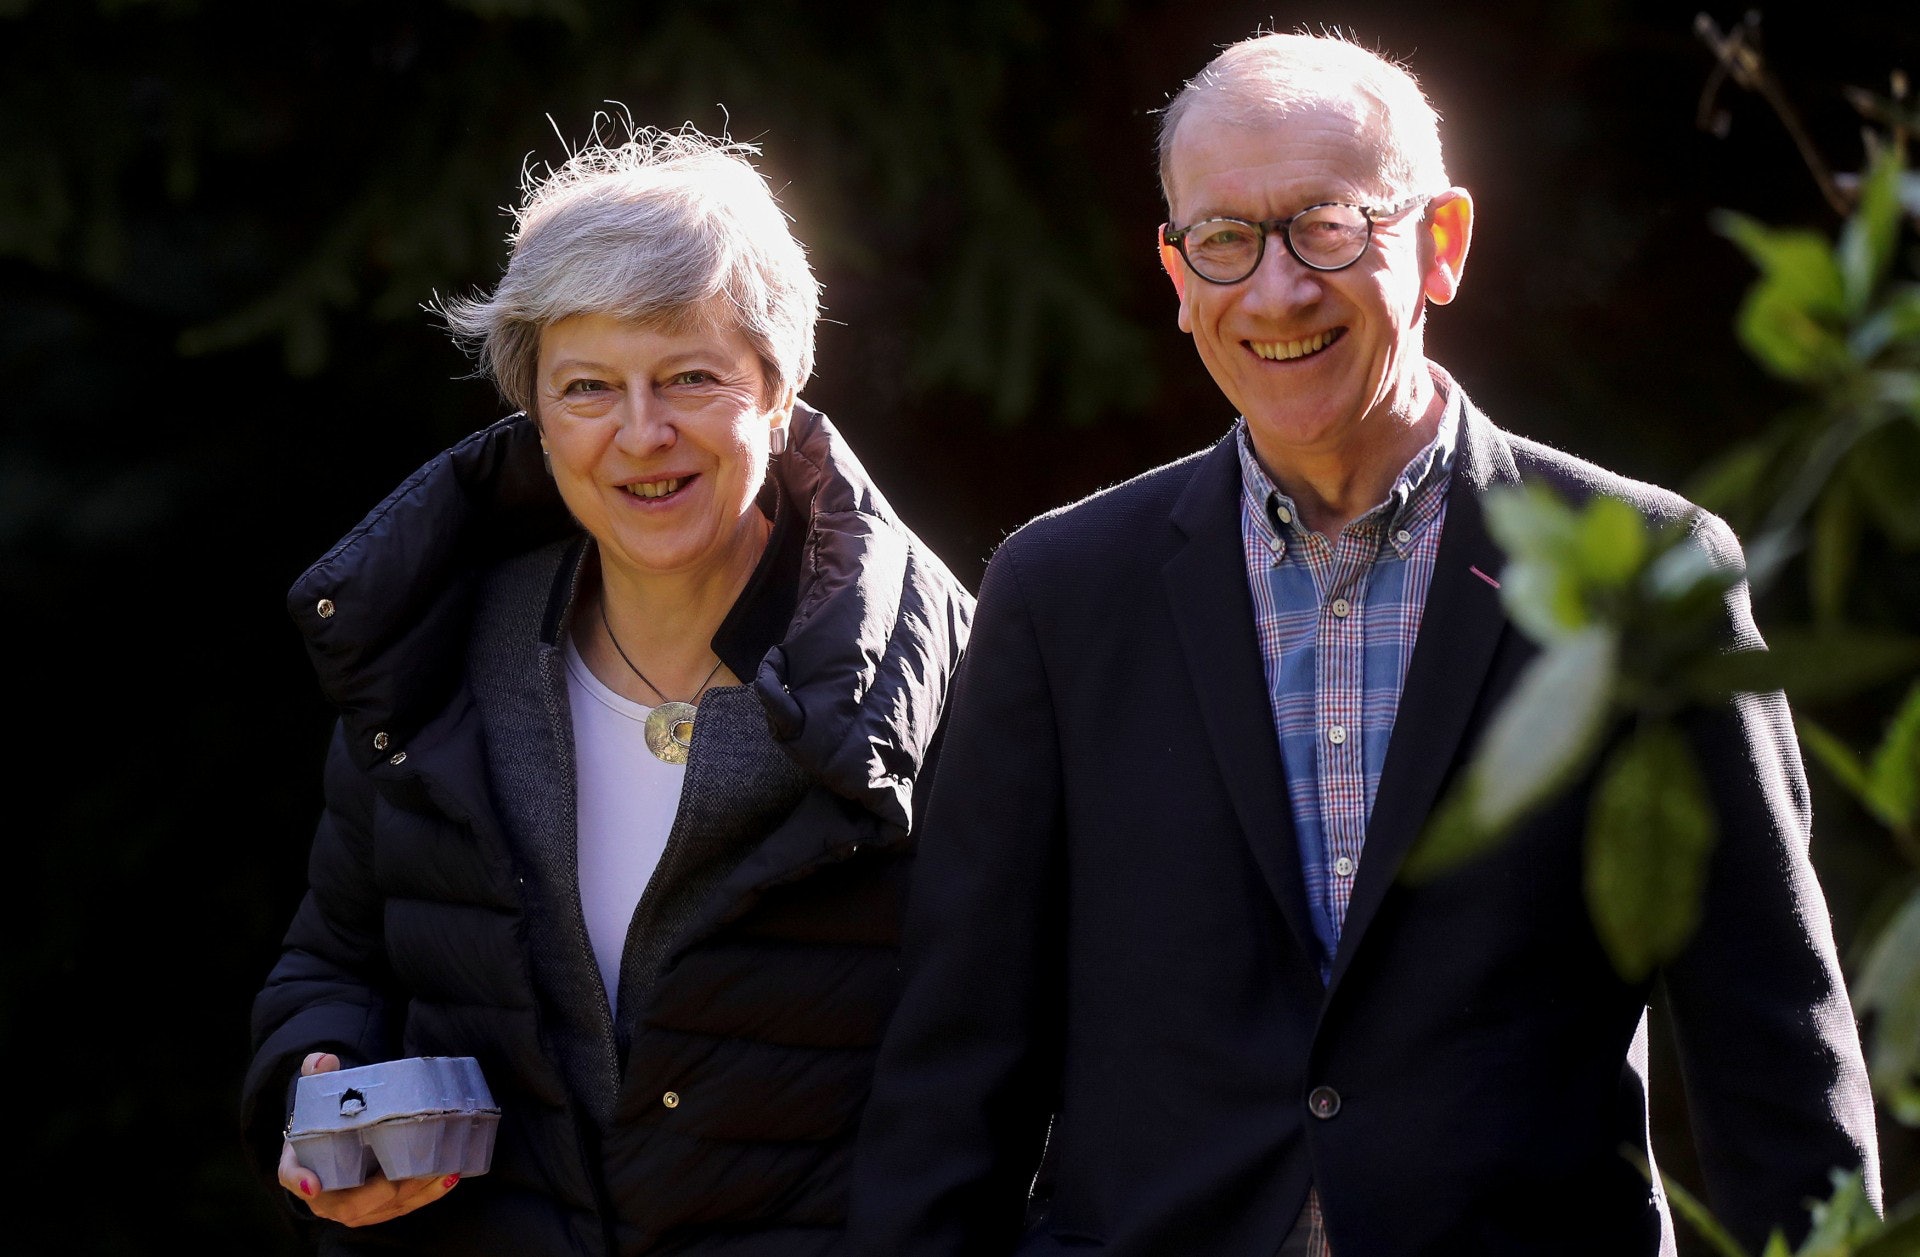 英國首相文翠珊（Theresa May）與丈夫美爾（Philip May）是牛津大學同學，梅爾比文翠珊少一歲。兩人於1980年9月結婚，至今已滿38年，人前人後表現恩愛。據說文翠珊在國會發言時，美爾都會到場靜聽支持。（路透社）